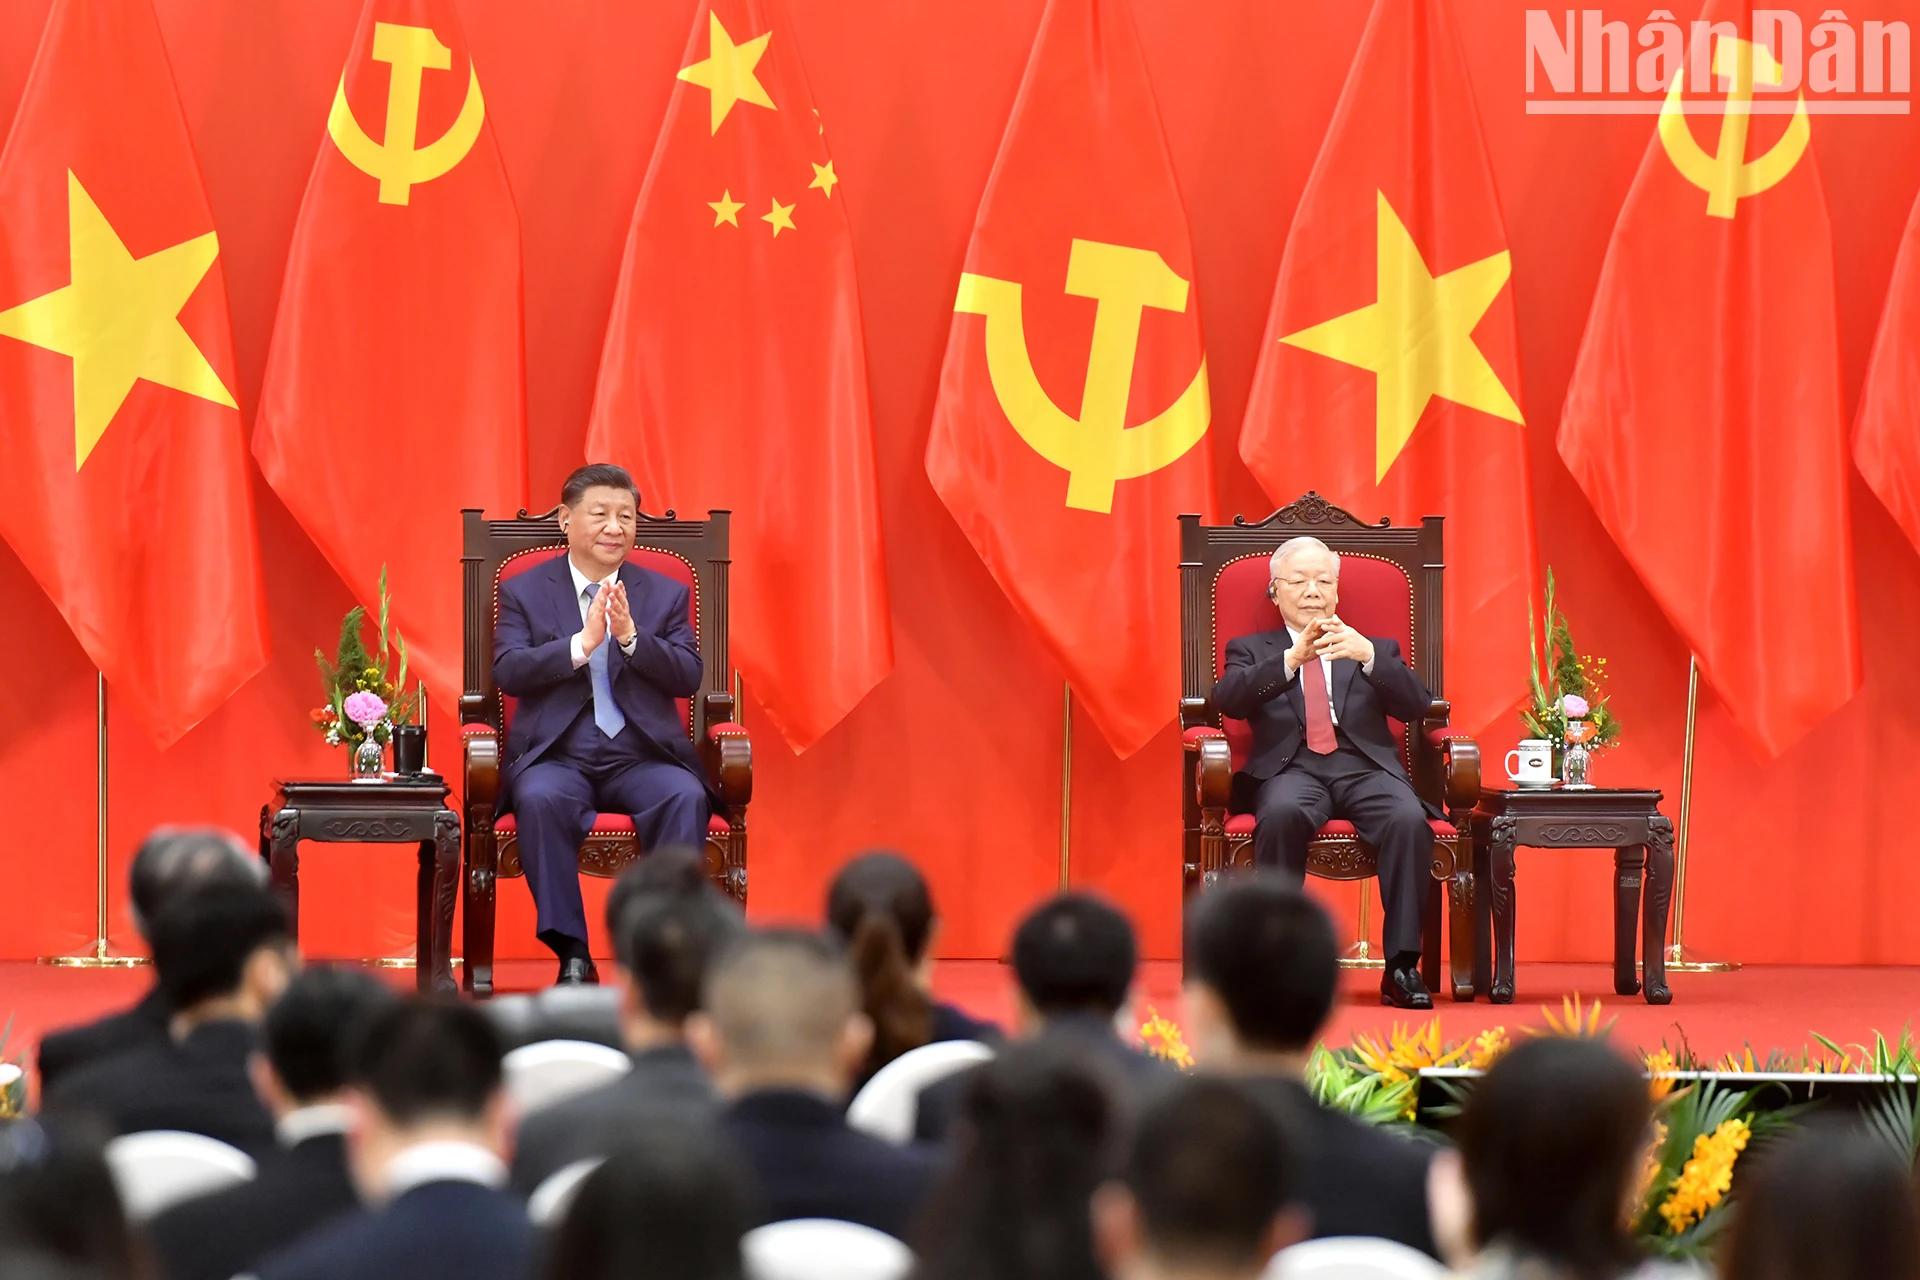 Tổng Bí thư Nguyễn Phú Trọng với Tổng Bí thư, Chủ tịch Trung Quốc Tập Cận Bình tại Gặp gỡ nhân sĩ hữu nghị và thế hệ trẻ Việt Nam-Trung Quốc.